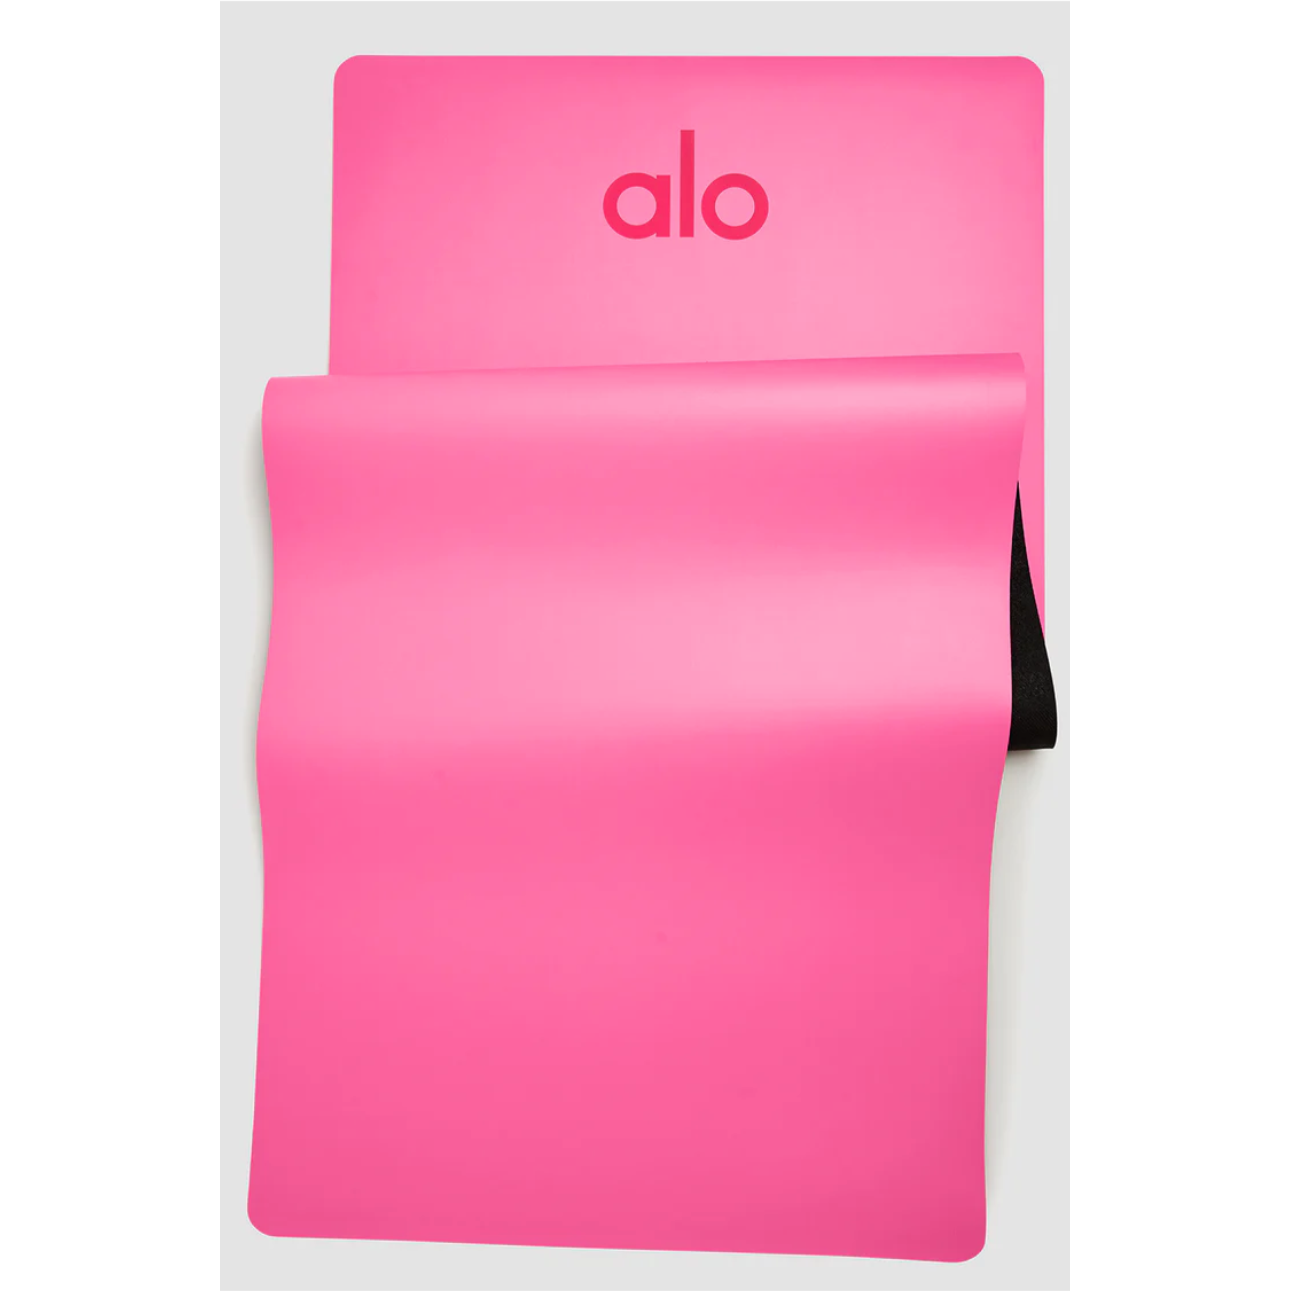 Alo warrior mat (powder pink), 運動產品, 運動與健身, 運動與健身